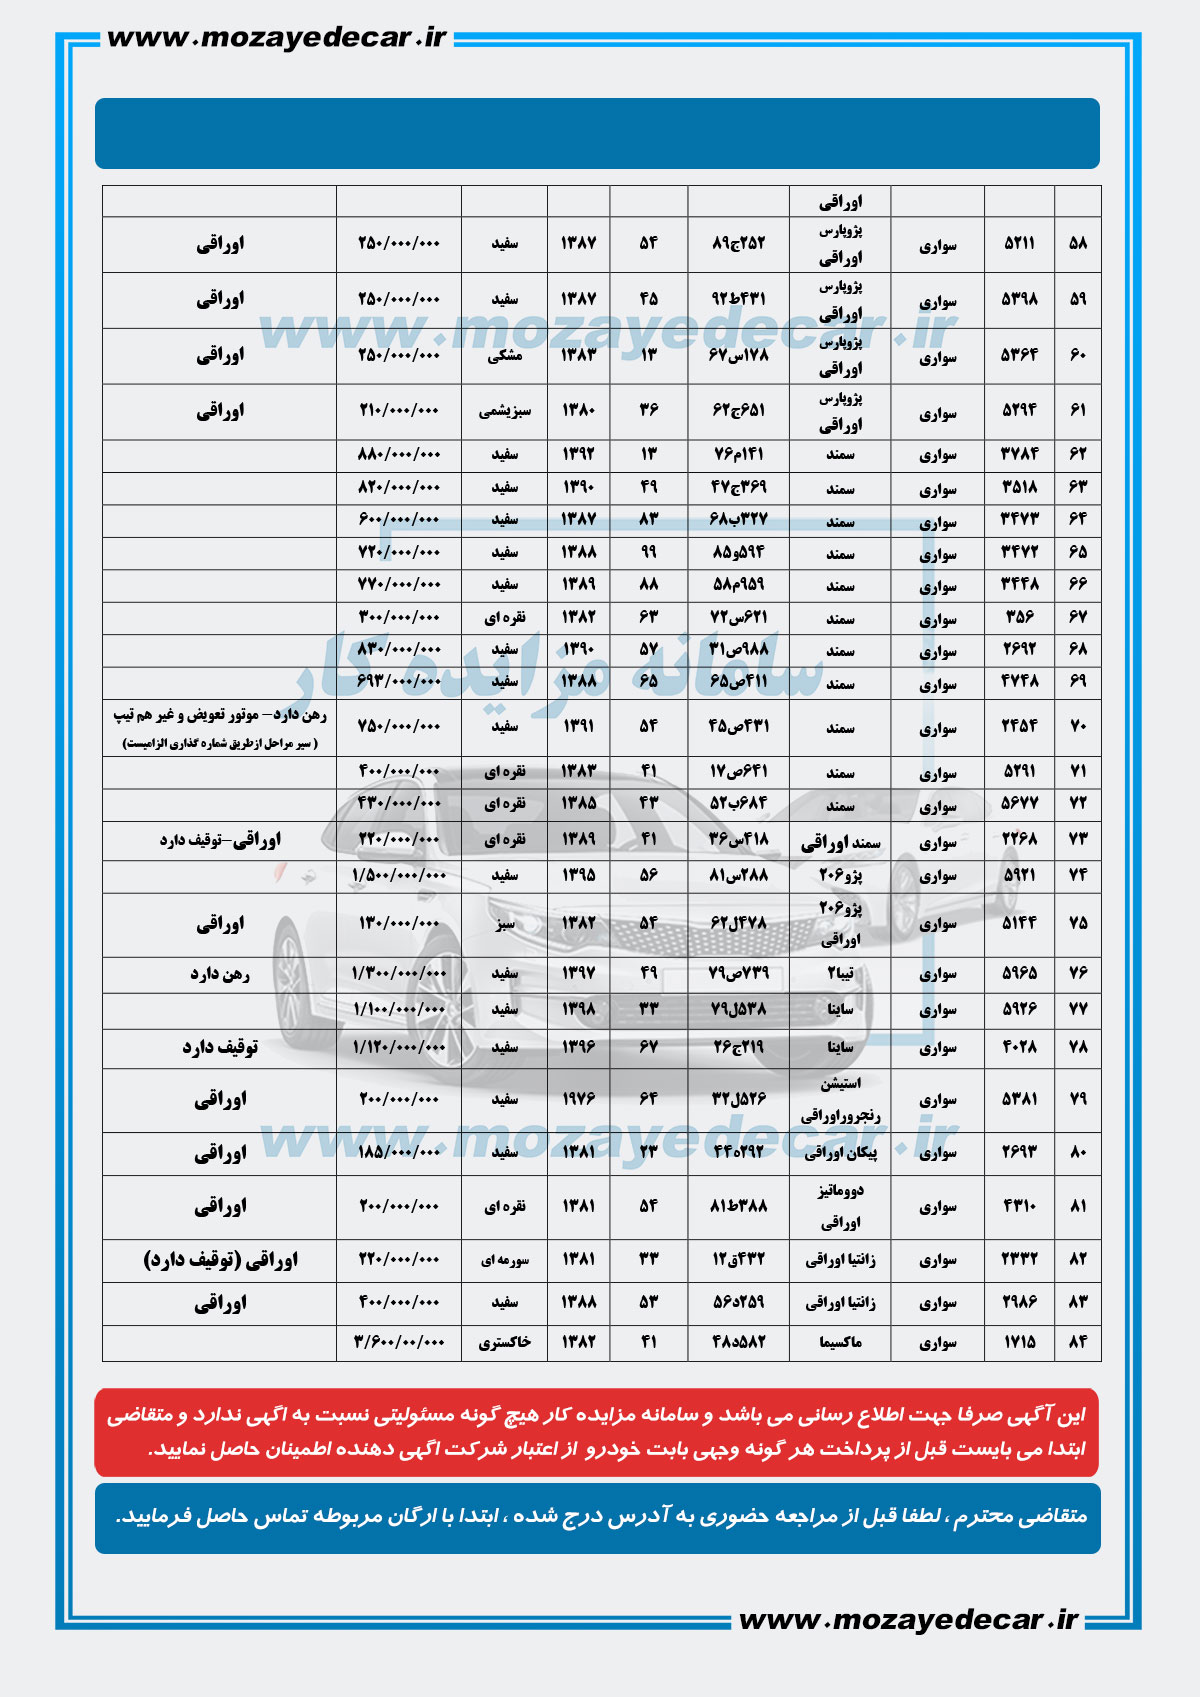 لیست قیمت مزایده اصفهان